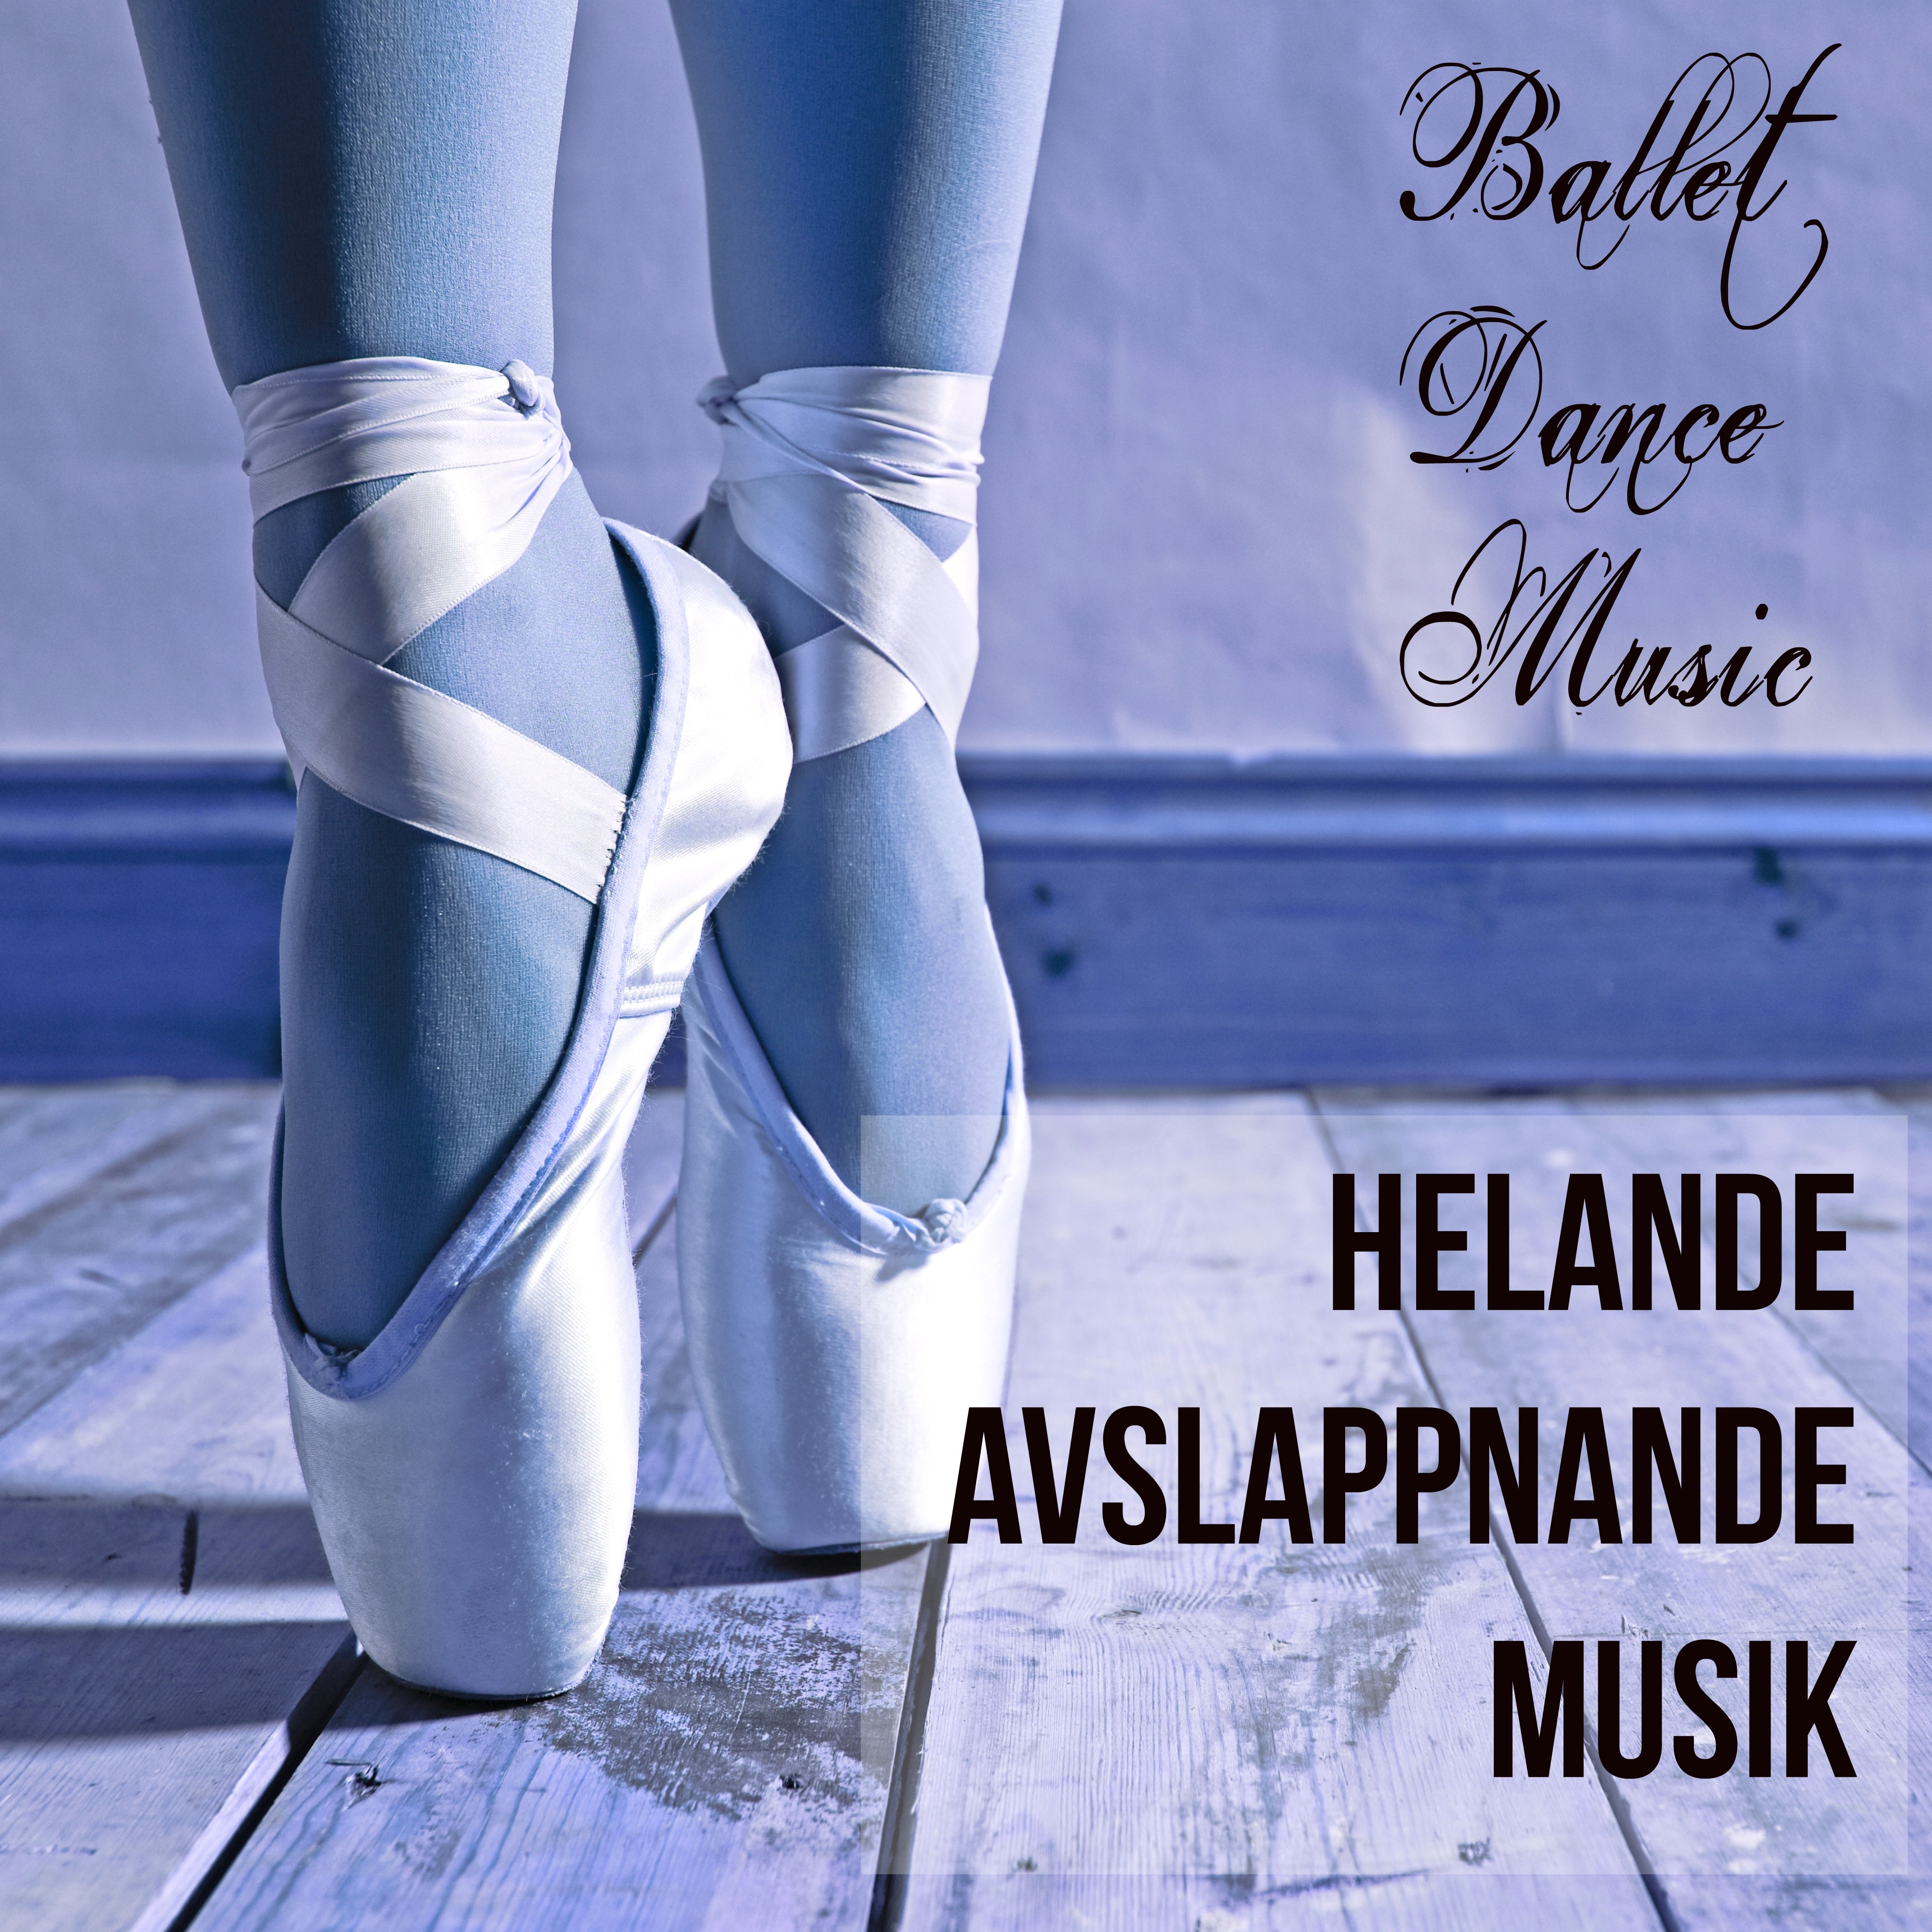 Ballet Dance Music - Helande Avslappnande Musik för Vägledd Meditation Chakra Alignment och Klassisk Balett